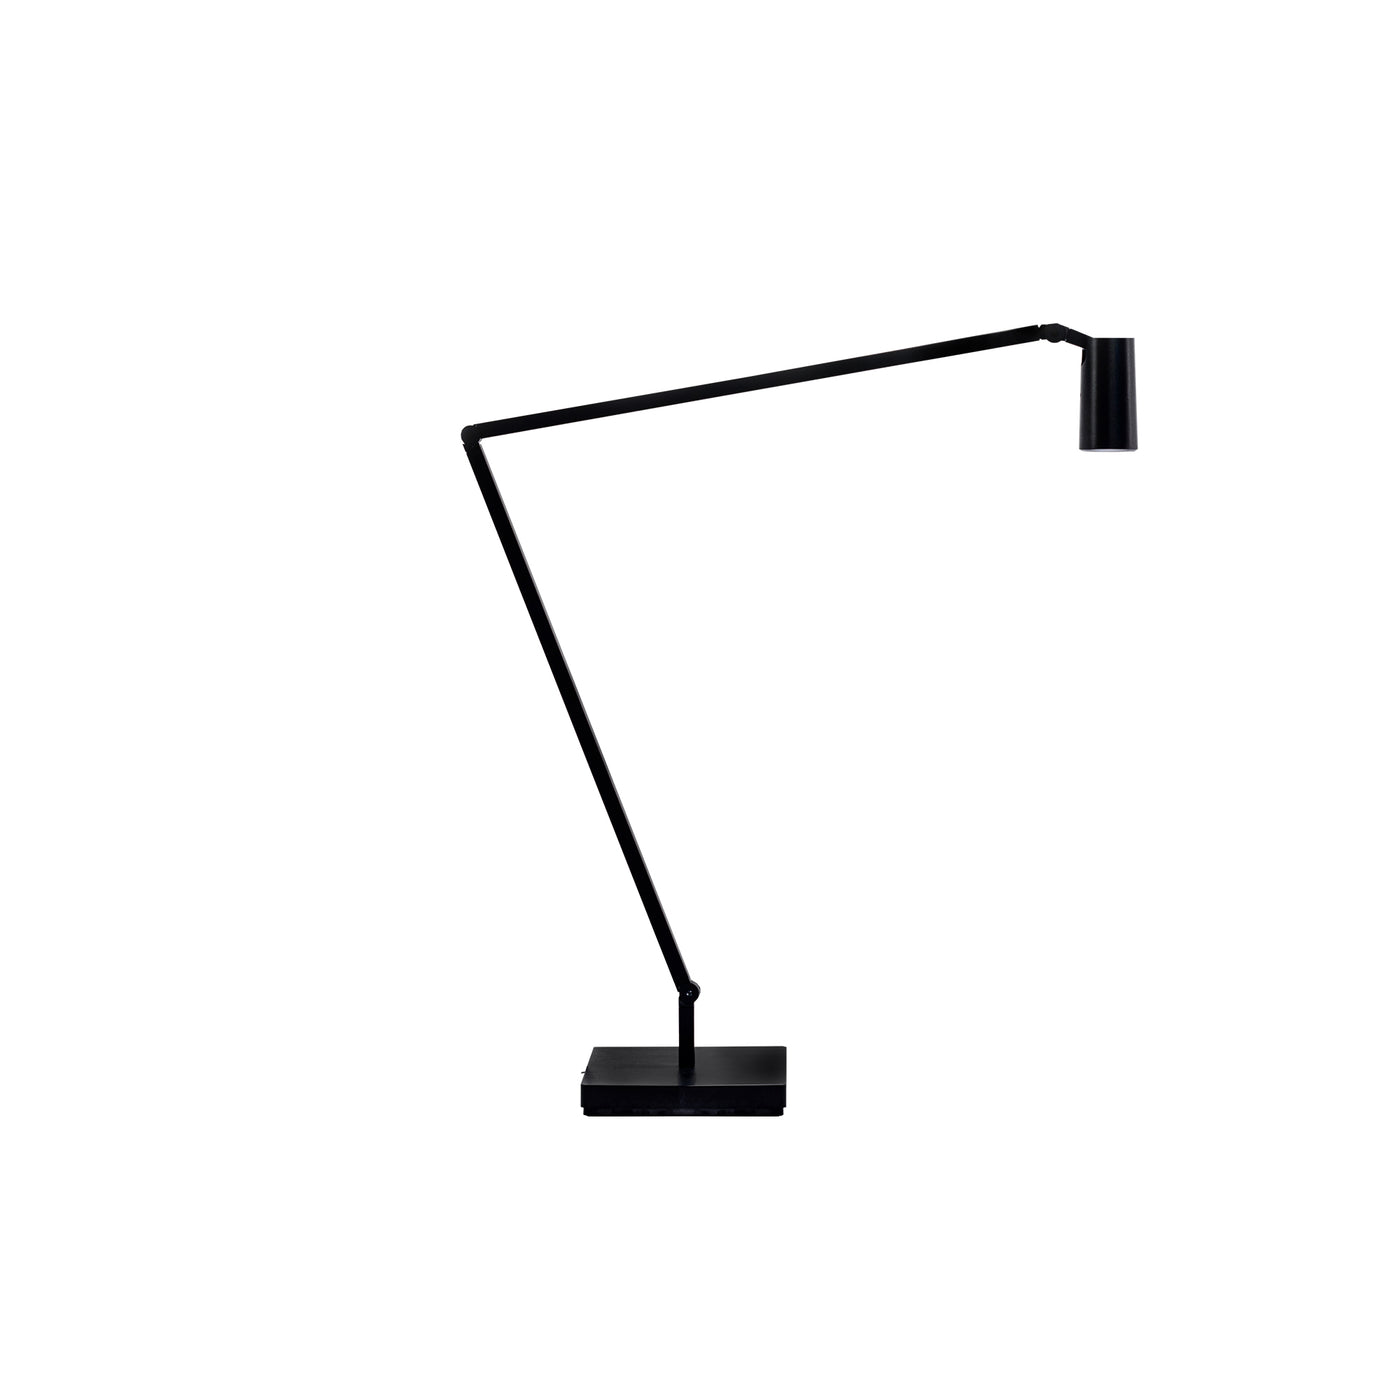 černá stolní lampa Nemo, Romein concept store, luxusní osvětlení do pokoje, stolní lampa